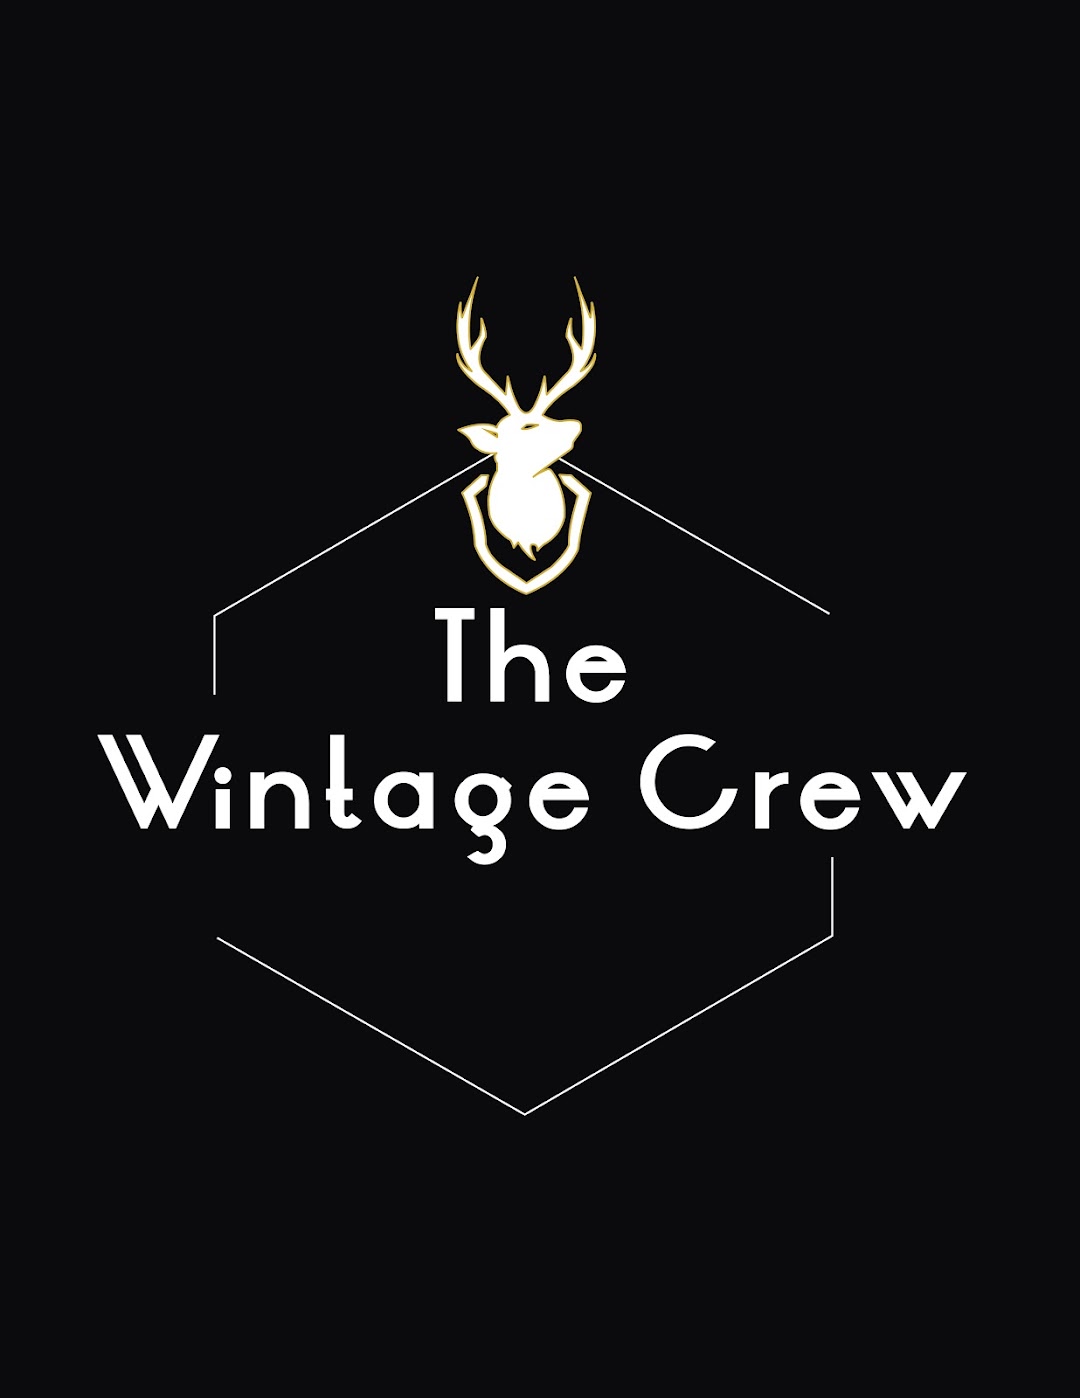 The Wintage Crew